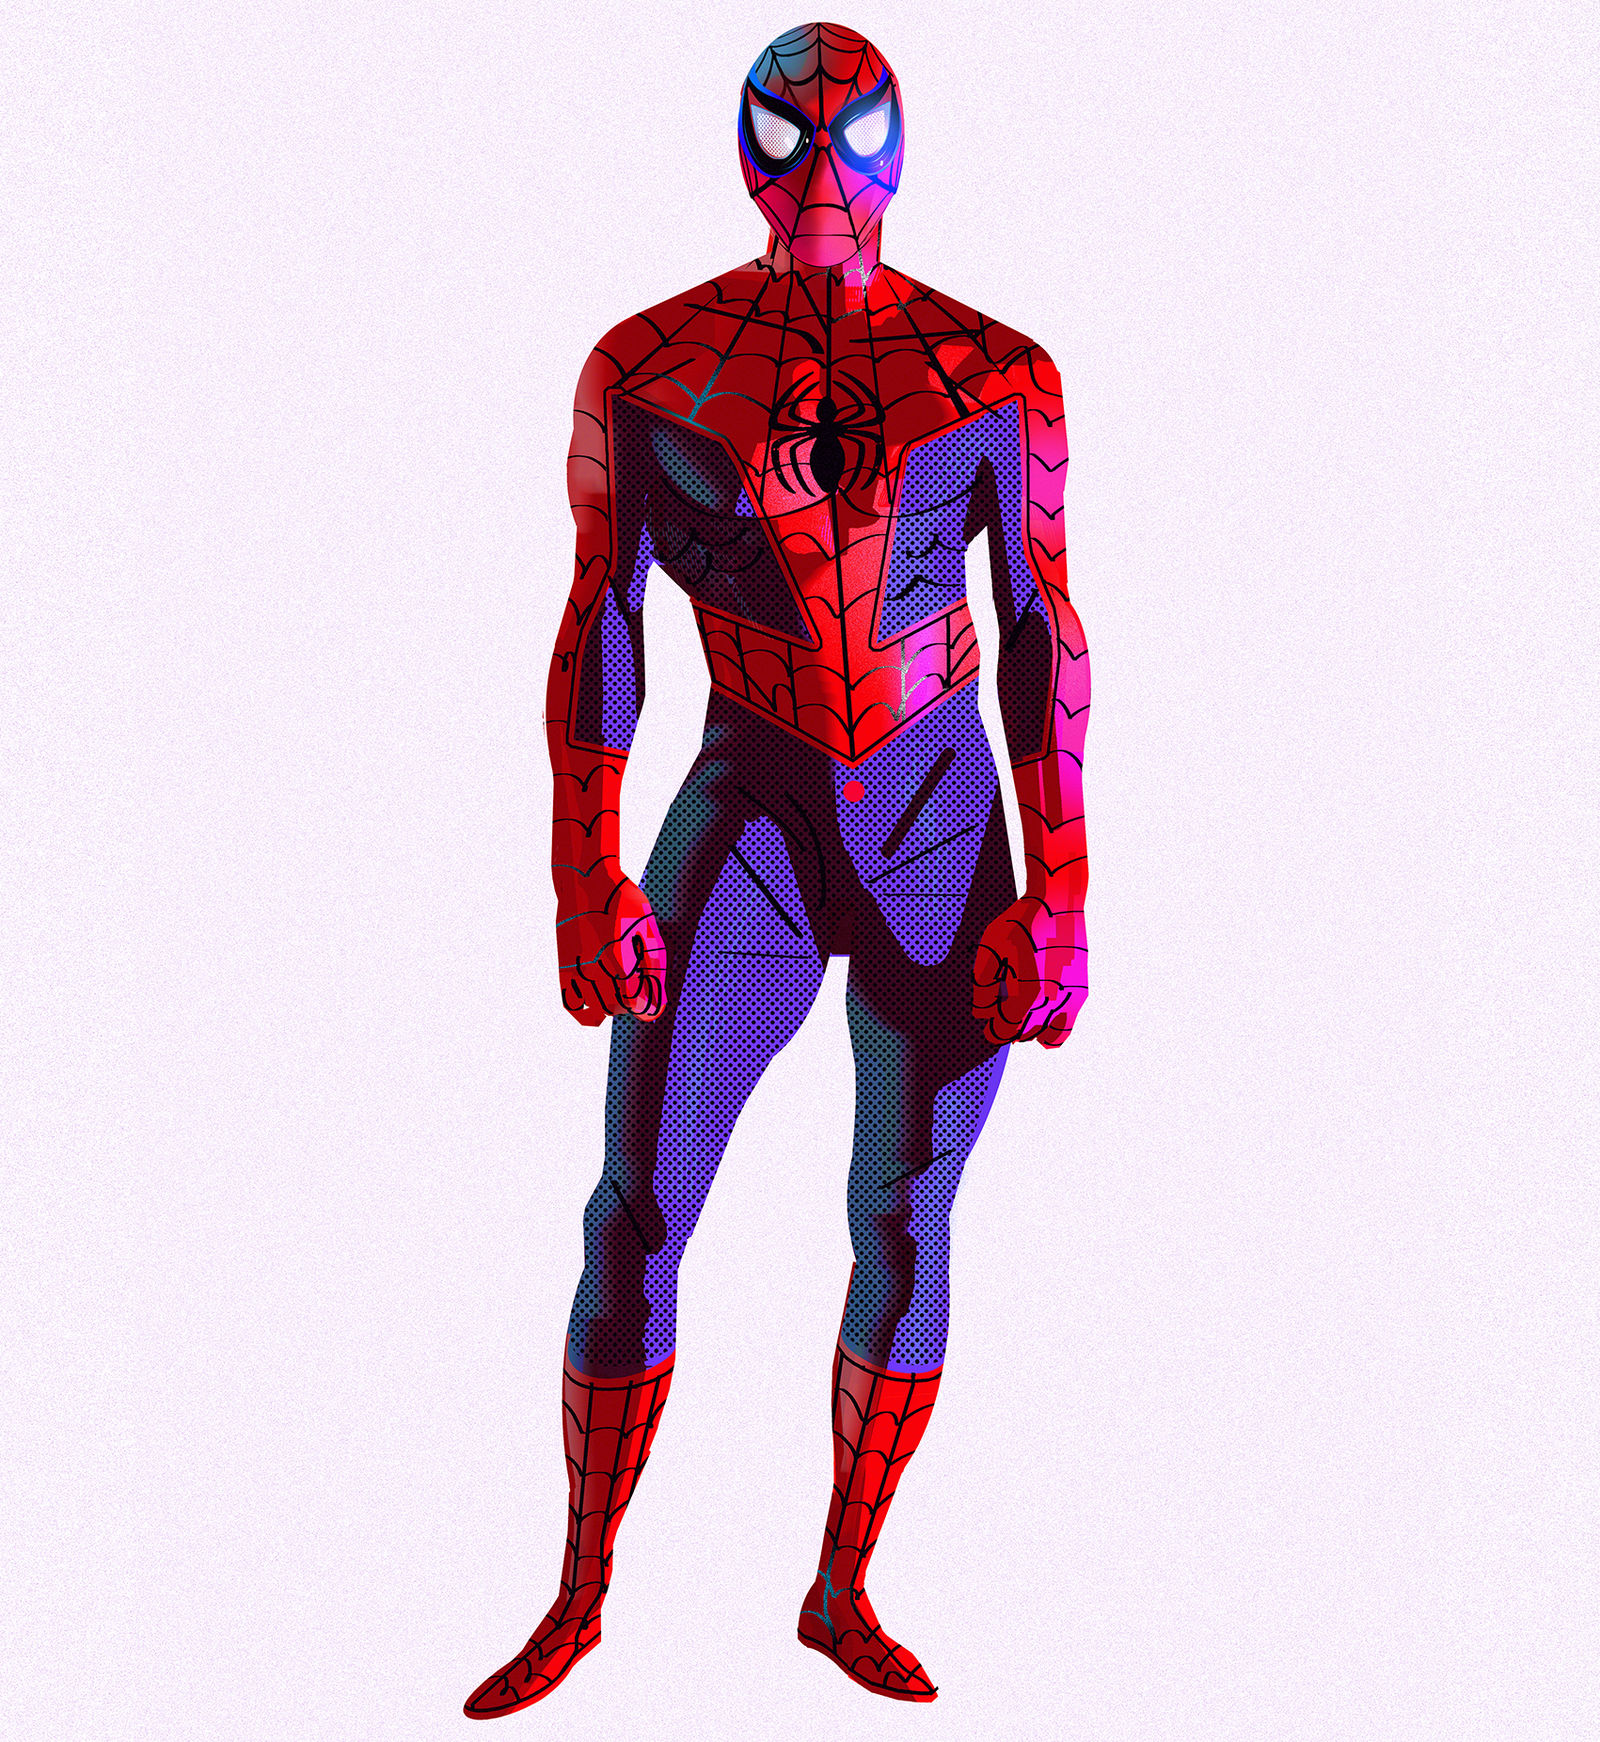 Spider Man Concept Art